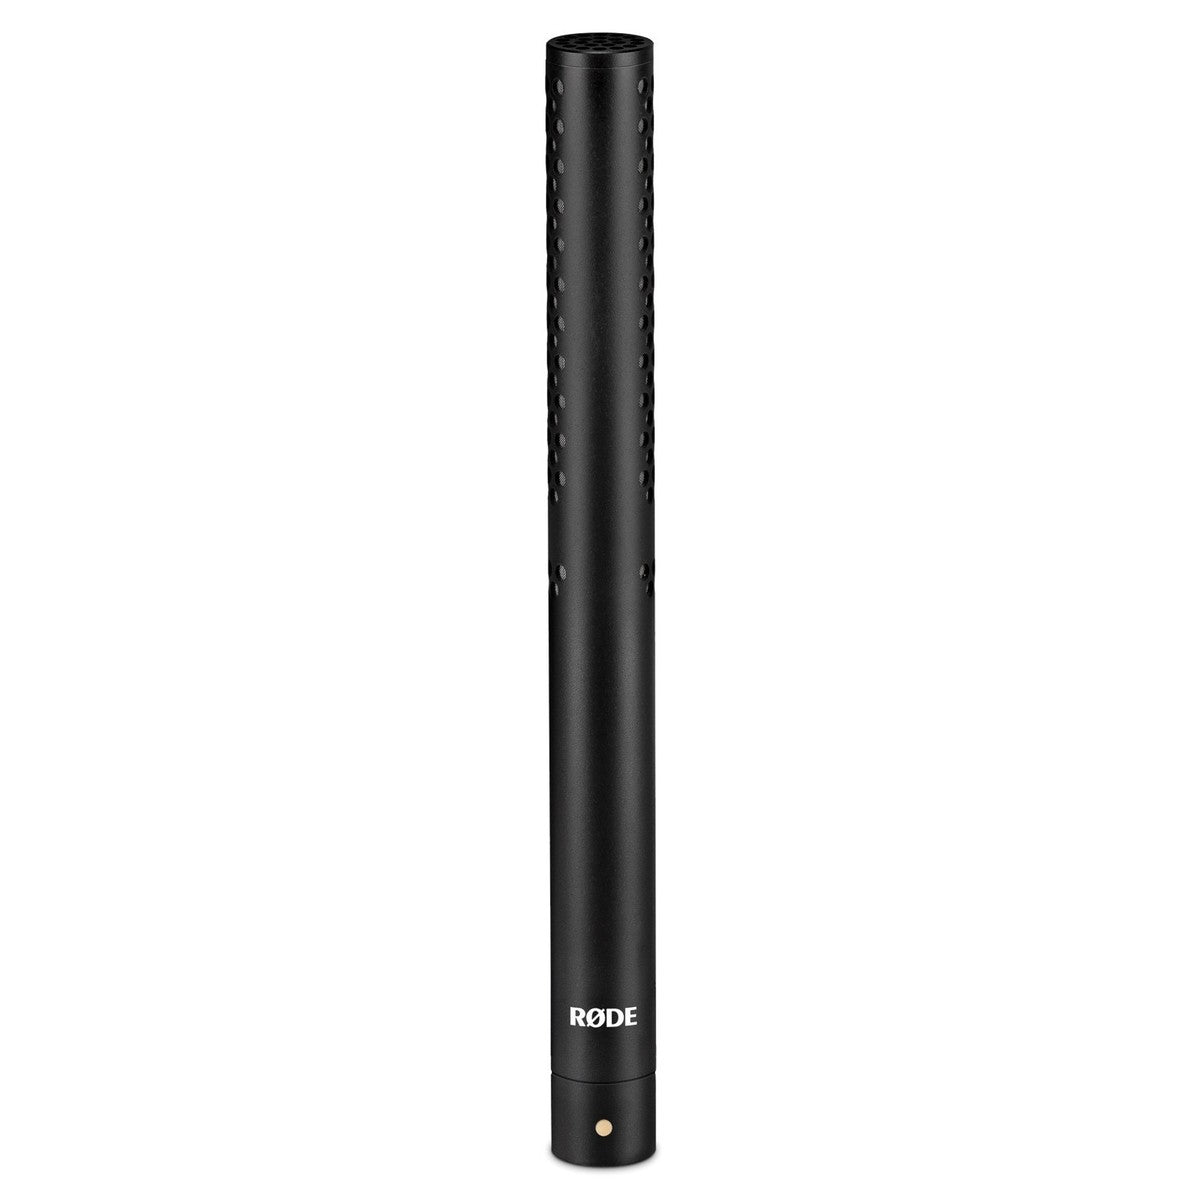 RØDE NTG-5 Shotgun Condenser Microphone Kit